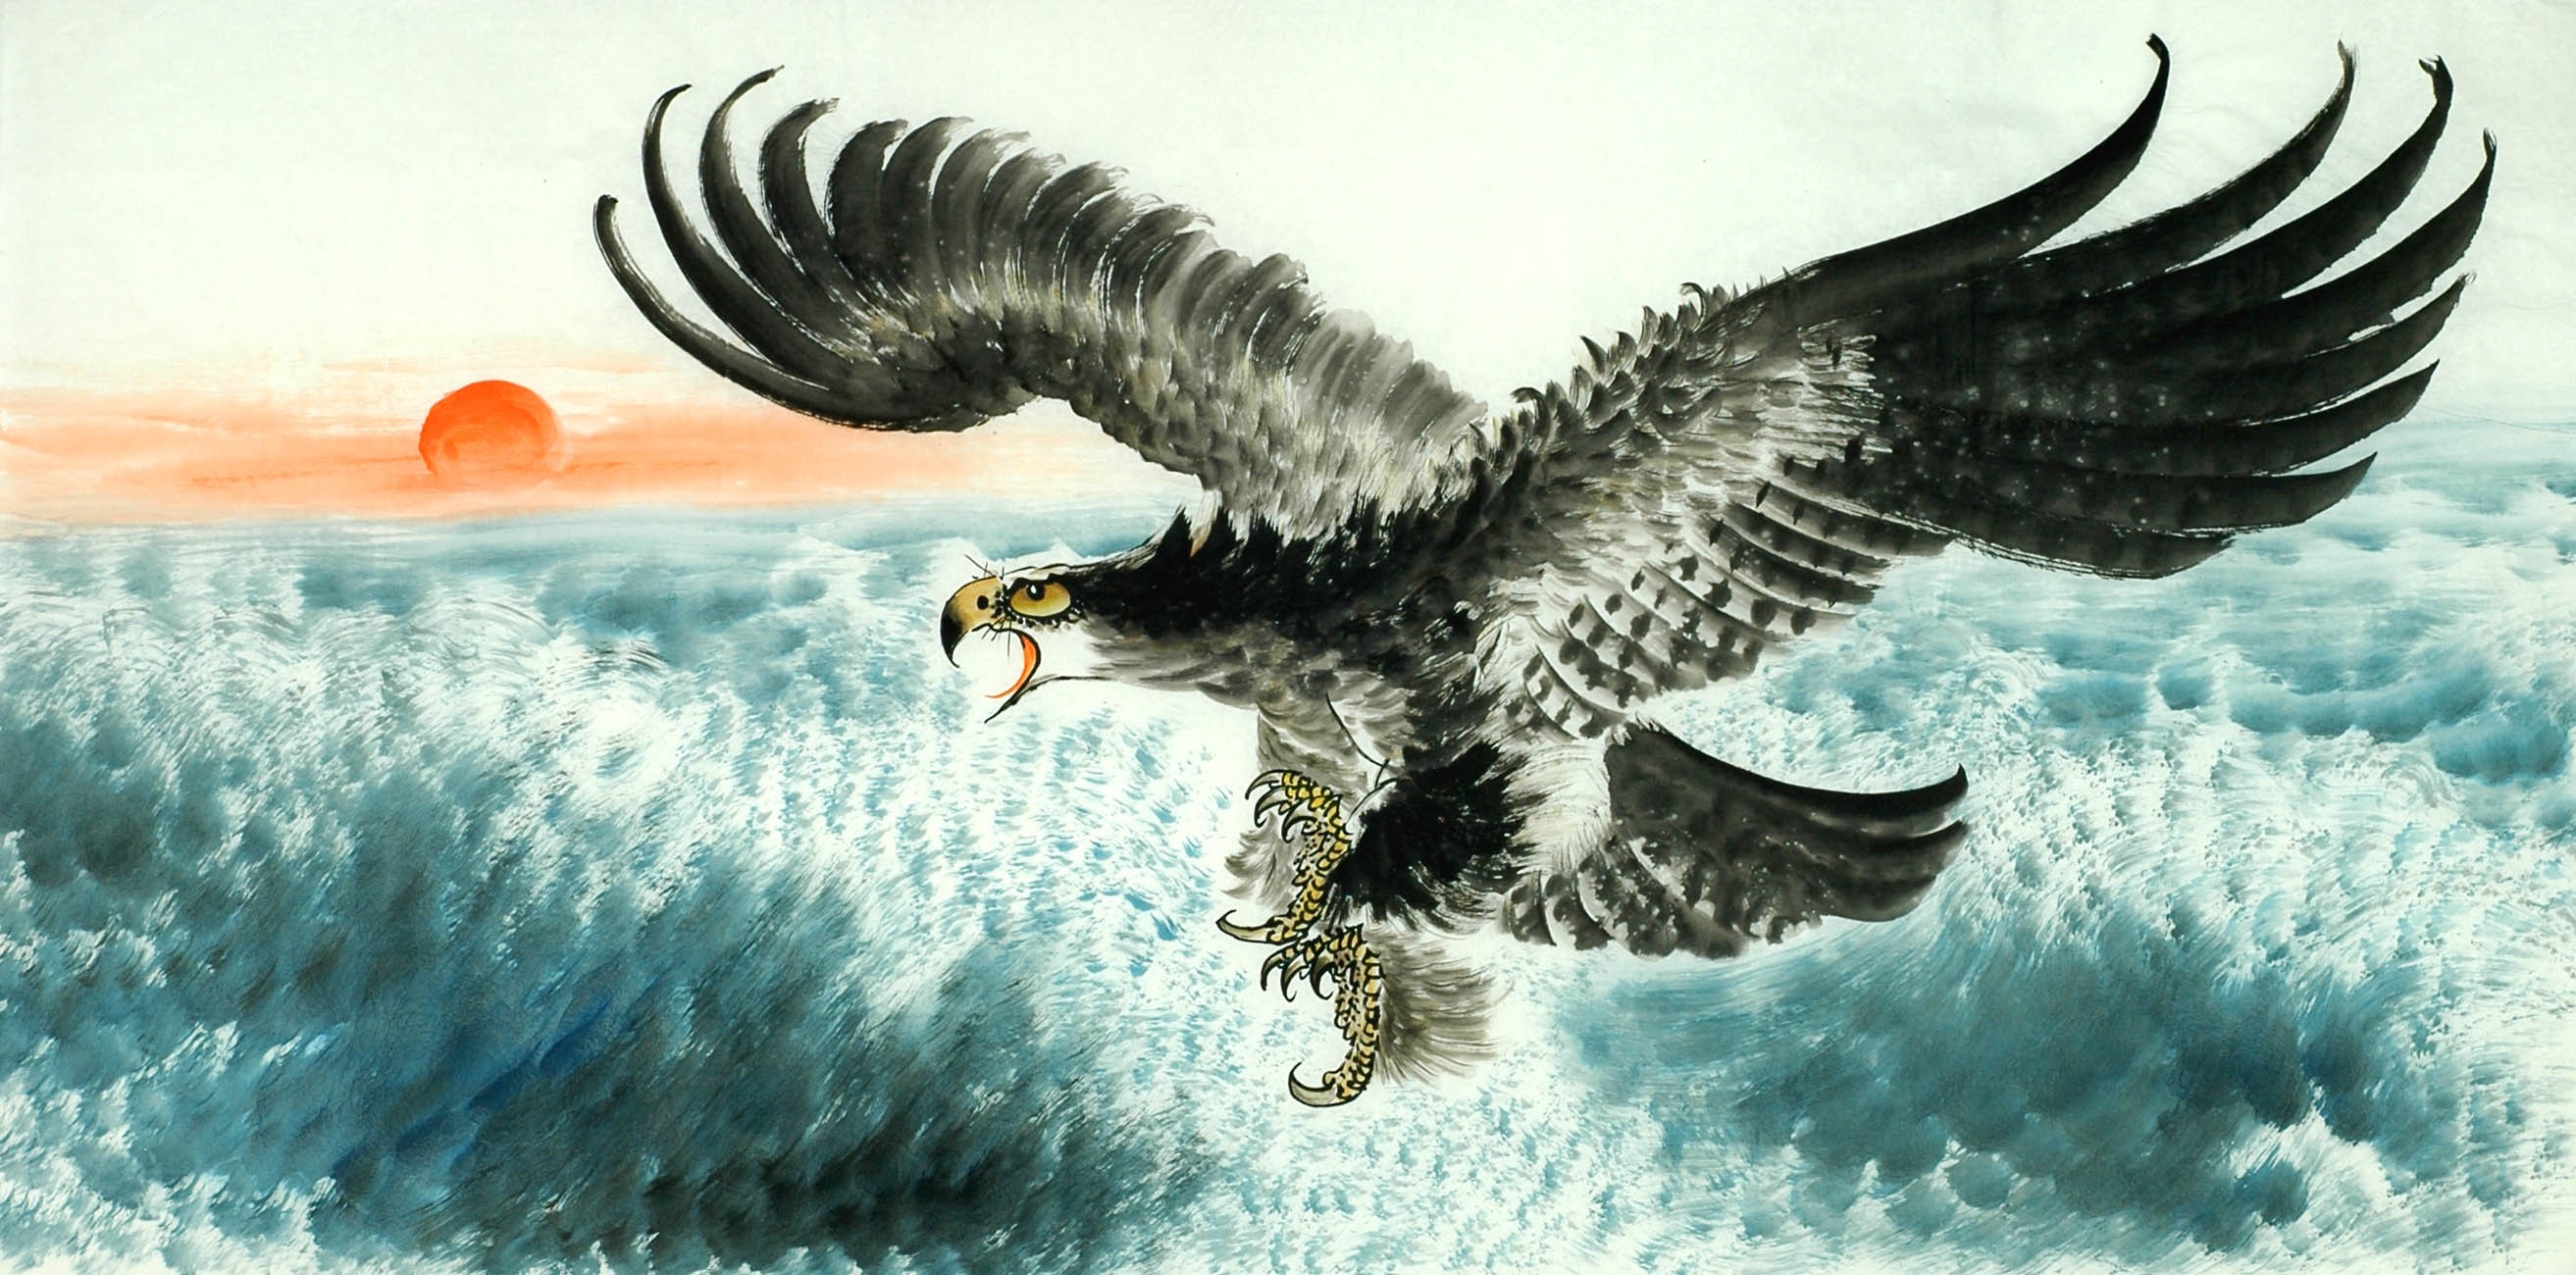 Chinese Eagle Painting - CNAG011310